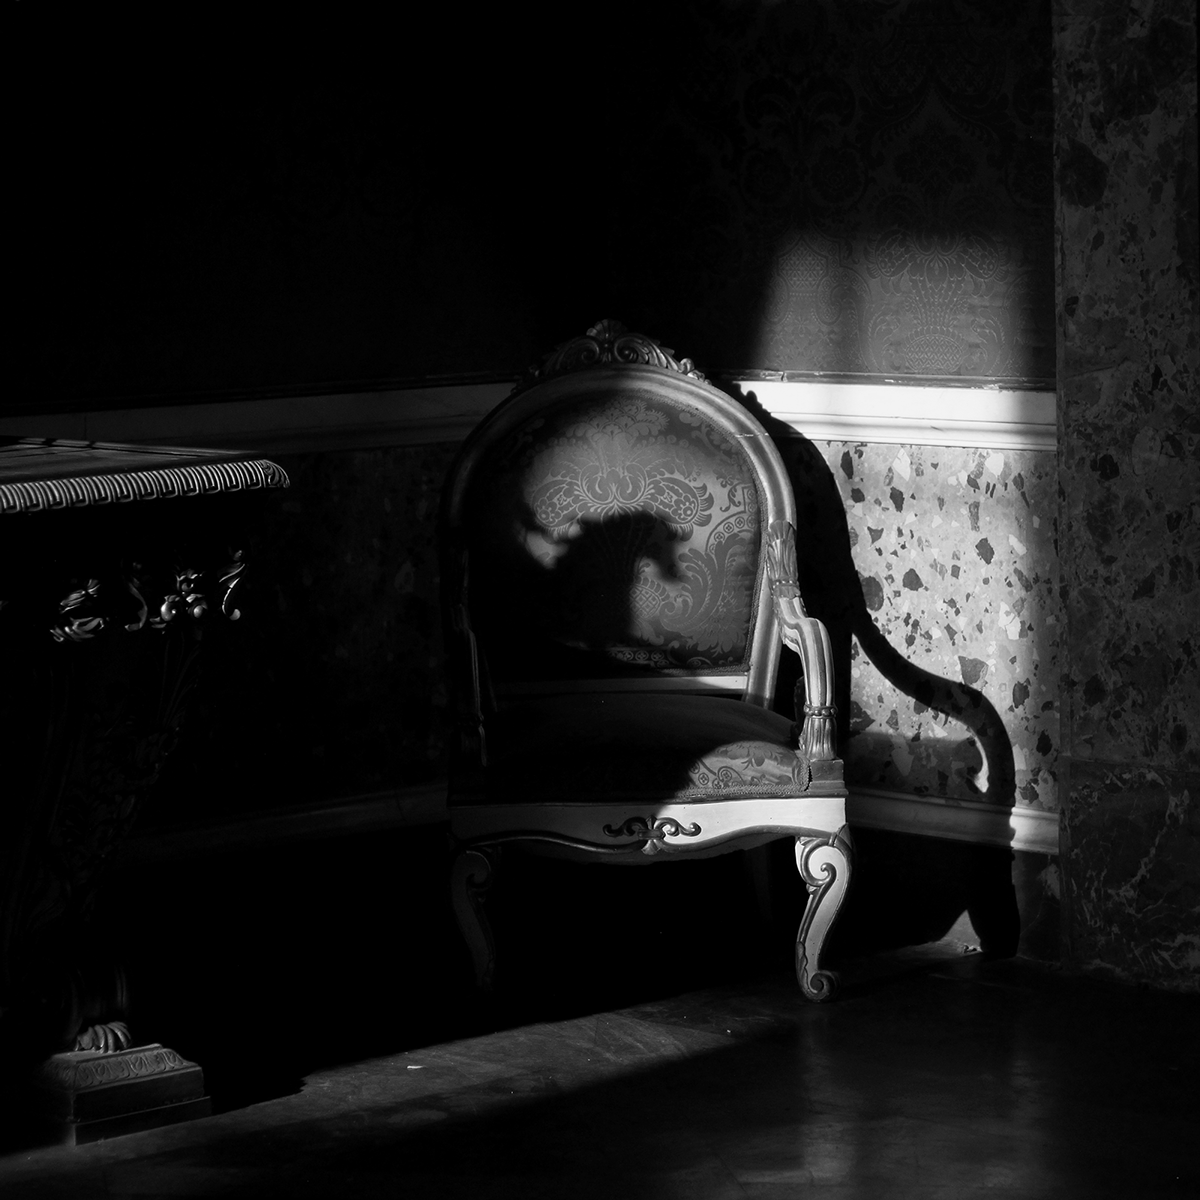 black and white bianco e nero bn bw Caserta reggia Reggia di Caserta italia Italy Shadows ombre light luce people persone